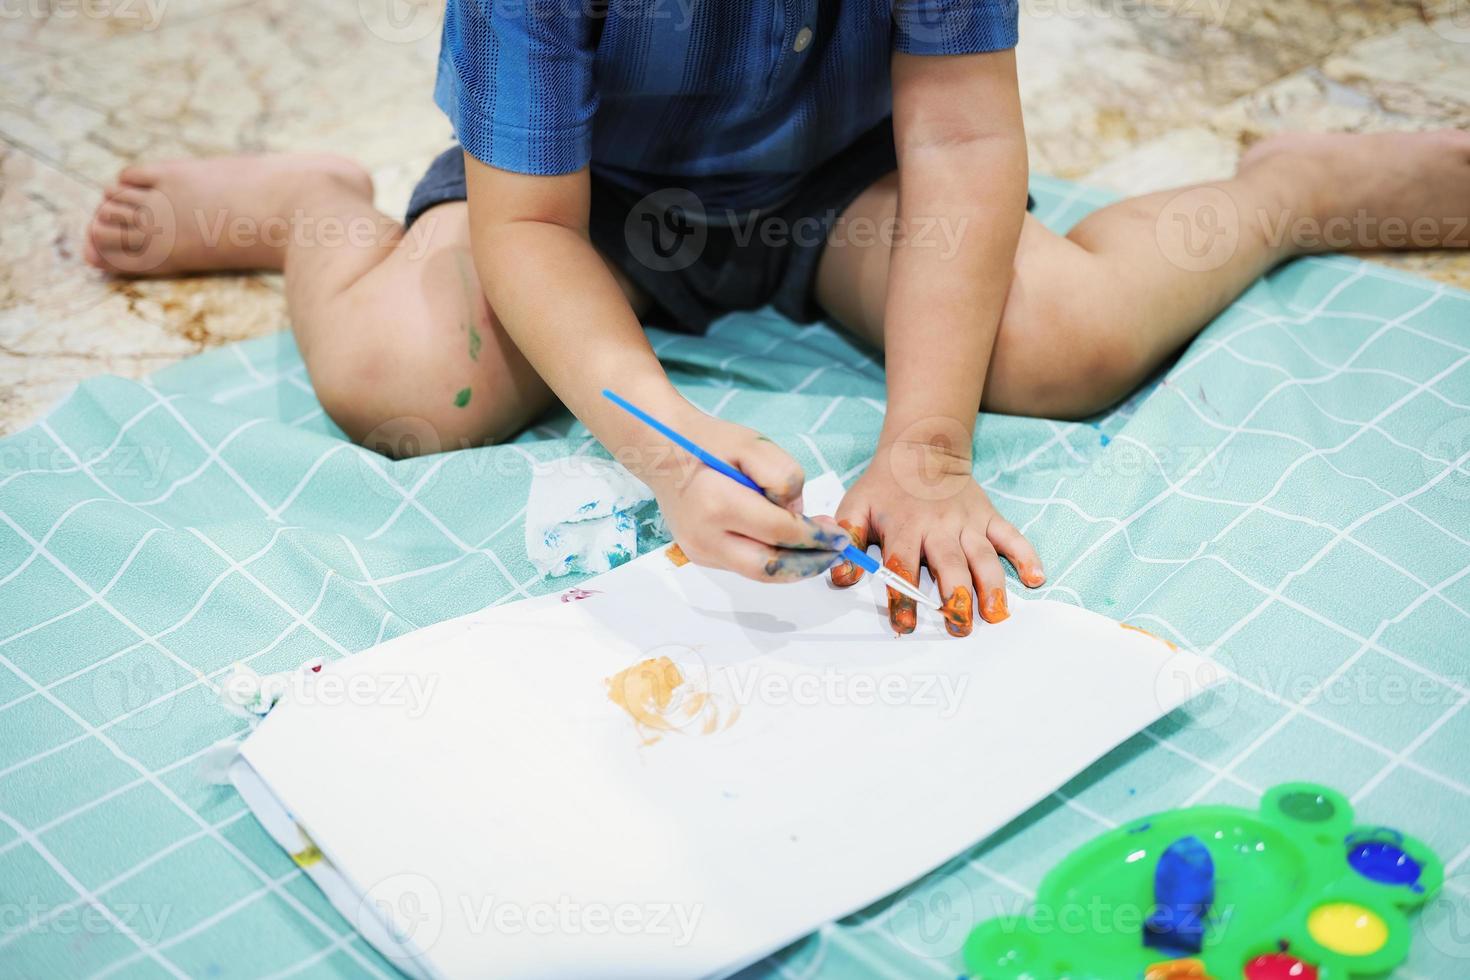 se concentrer sur leurs mains sur le papier. les enfants utilisent des pinceaux pour dessiner leurs mains sur du papier afin de développer leur imagination et d'améliorer leurs compétences cognitives. photo